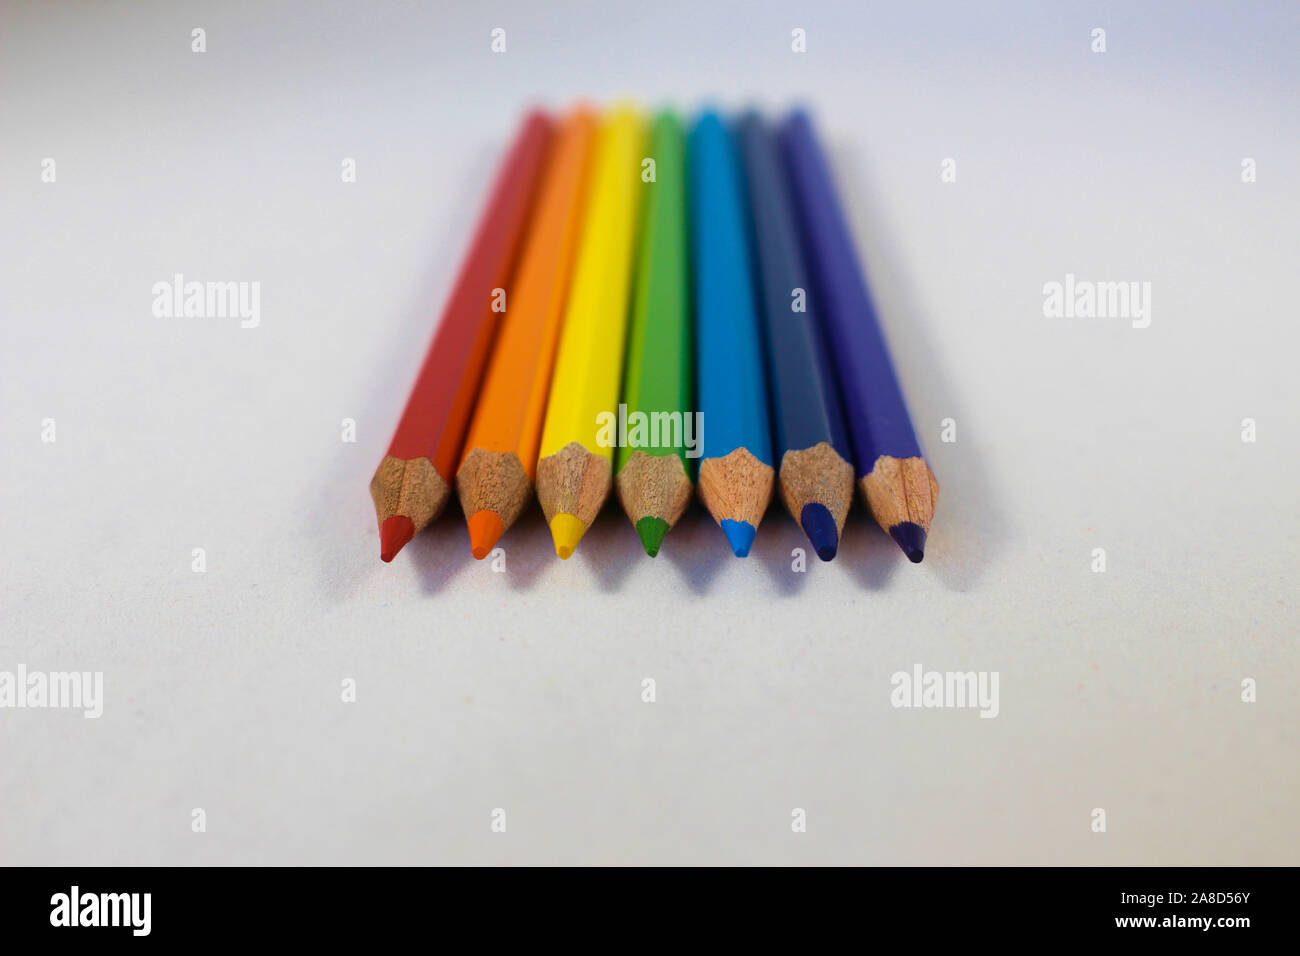 Vue oblique de crayons de couleur arc-en-ciel avec l'accent sur les conseils sélectionnés Banque D'Images